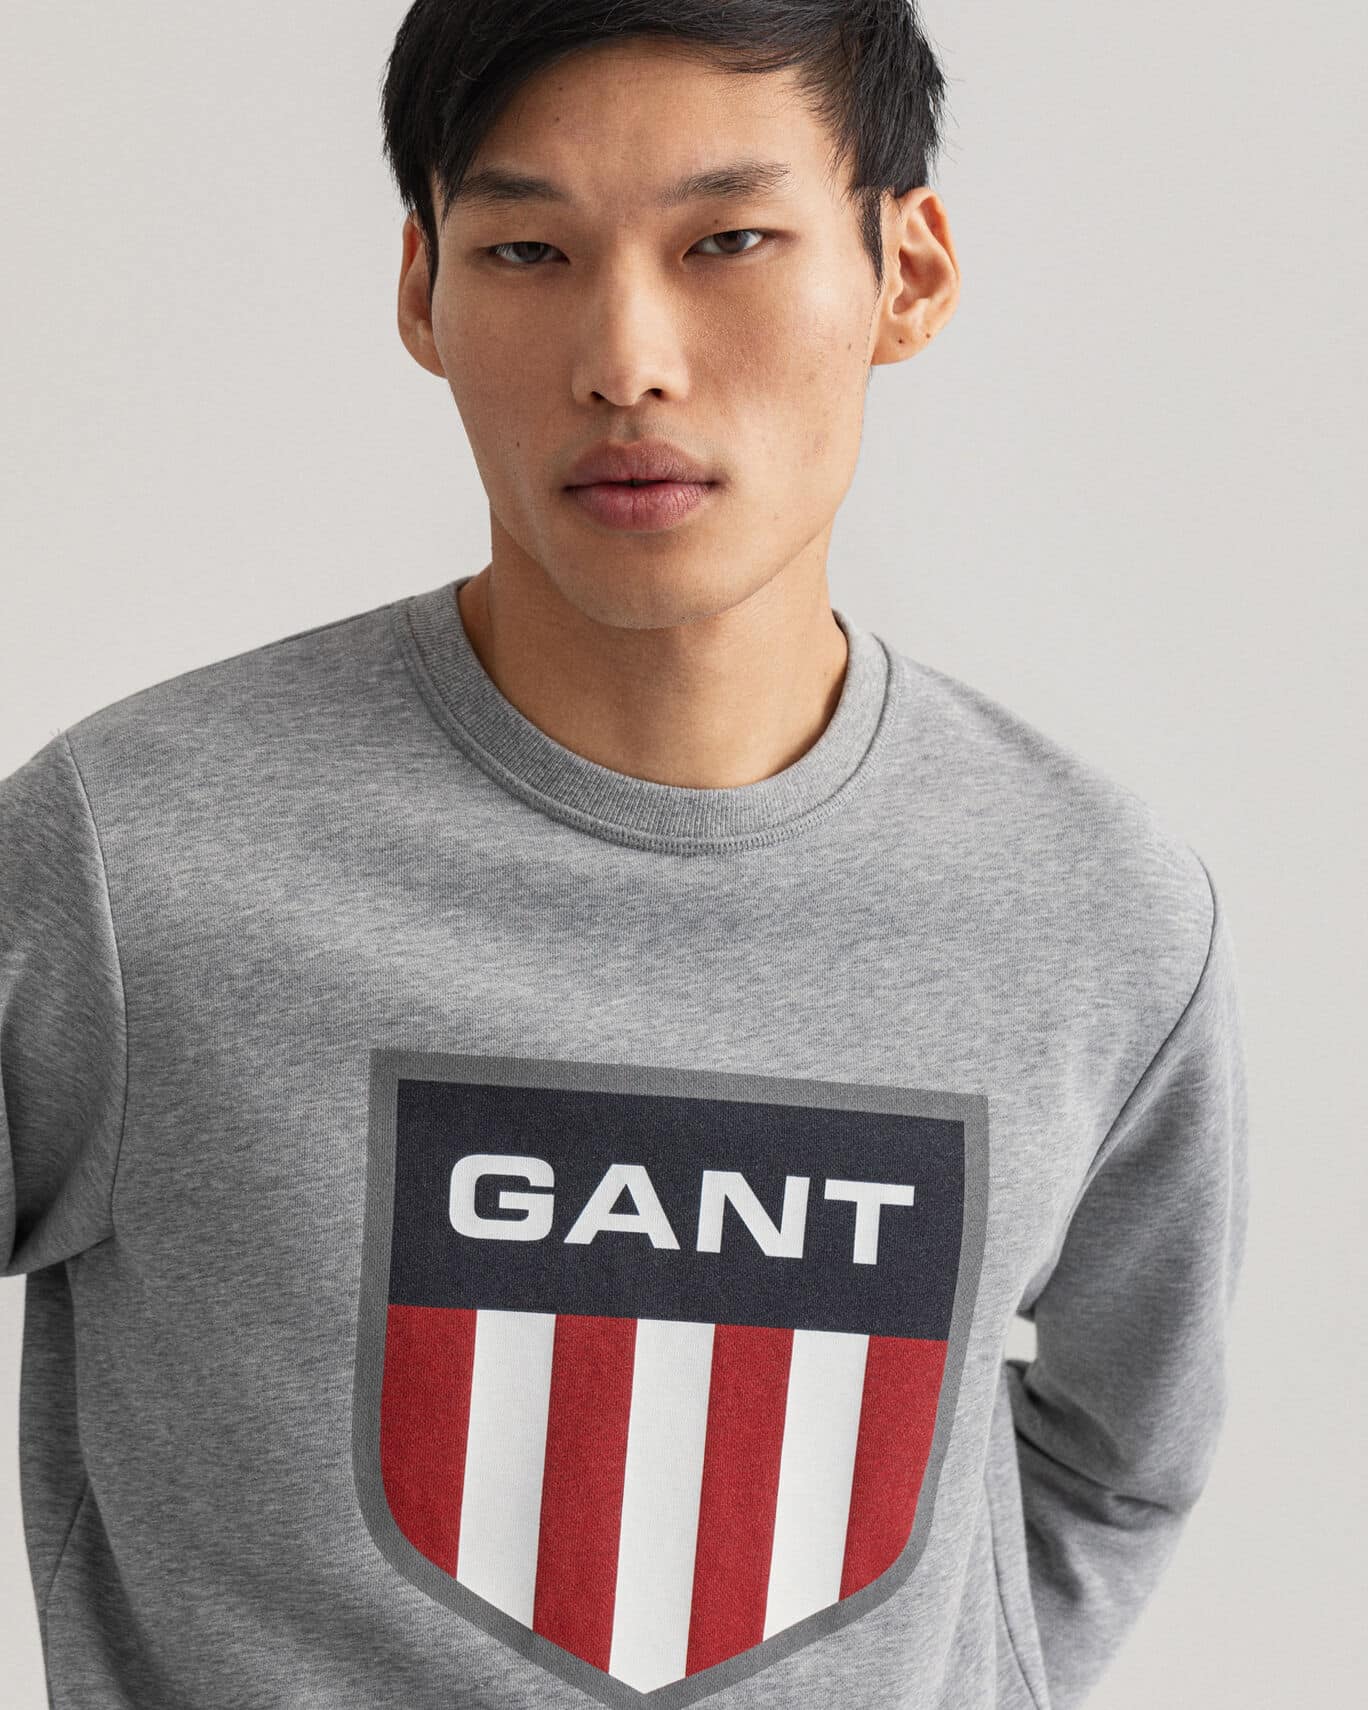 Buy Gant Retro Shield Crew Neck Sweatshirt Grey Melange - Scandinavian